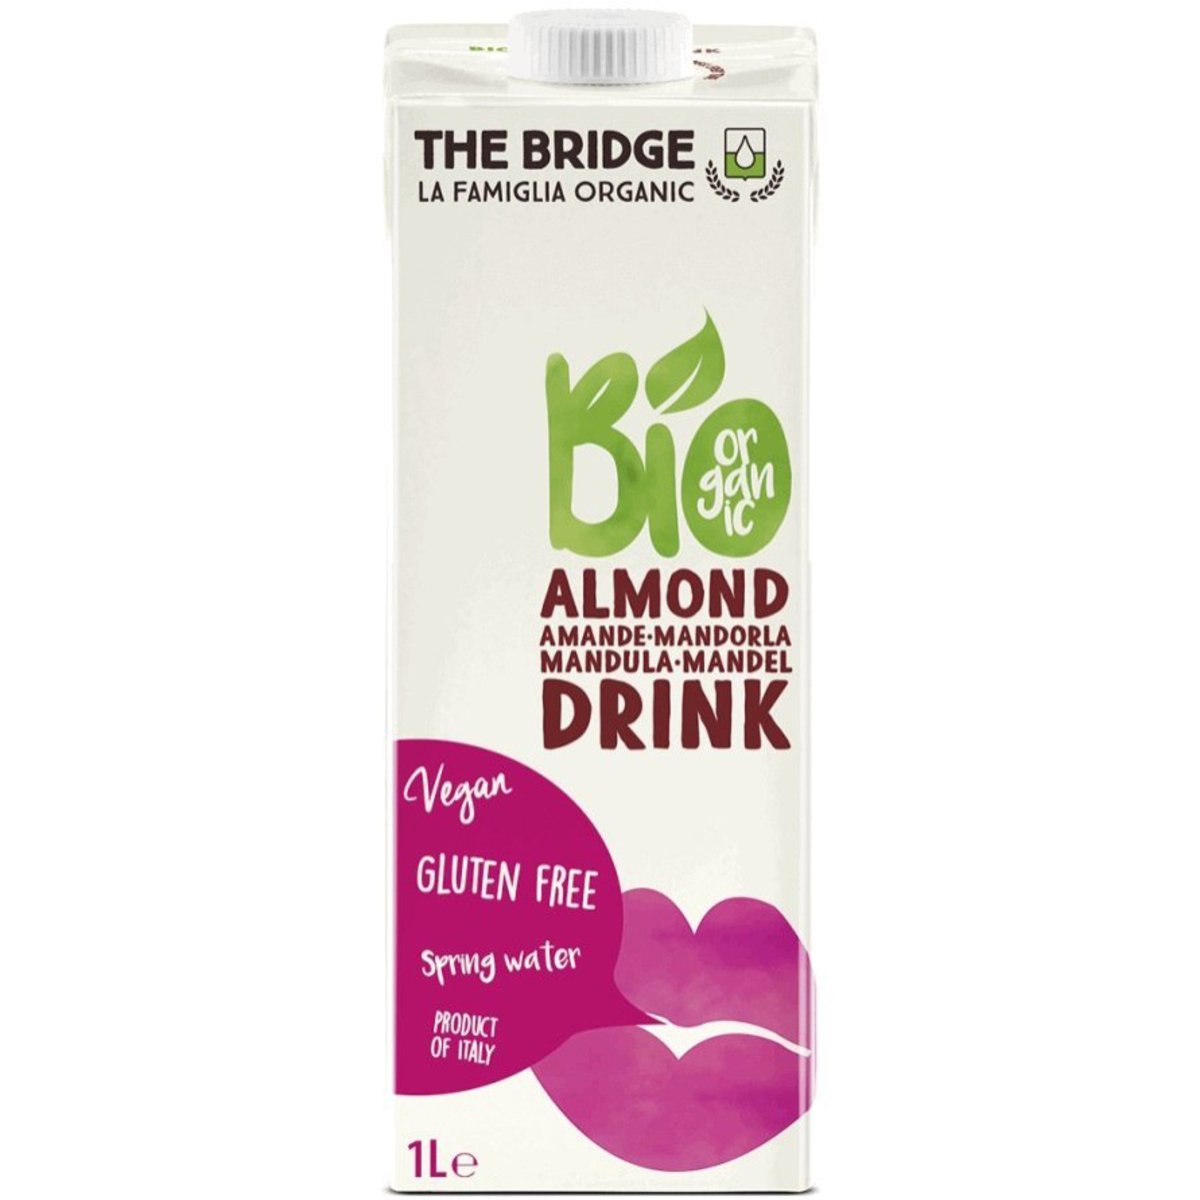 Органический напиток The Bridge с миндалем 3% 1 л - фото 1